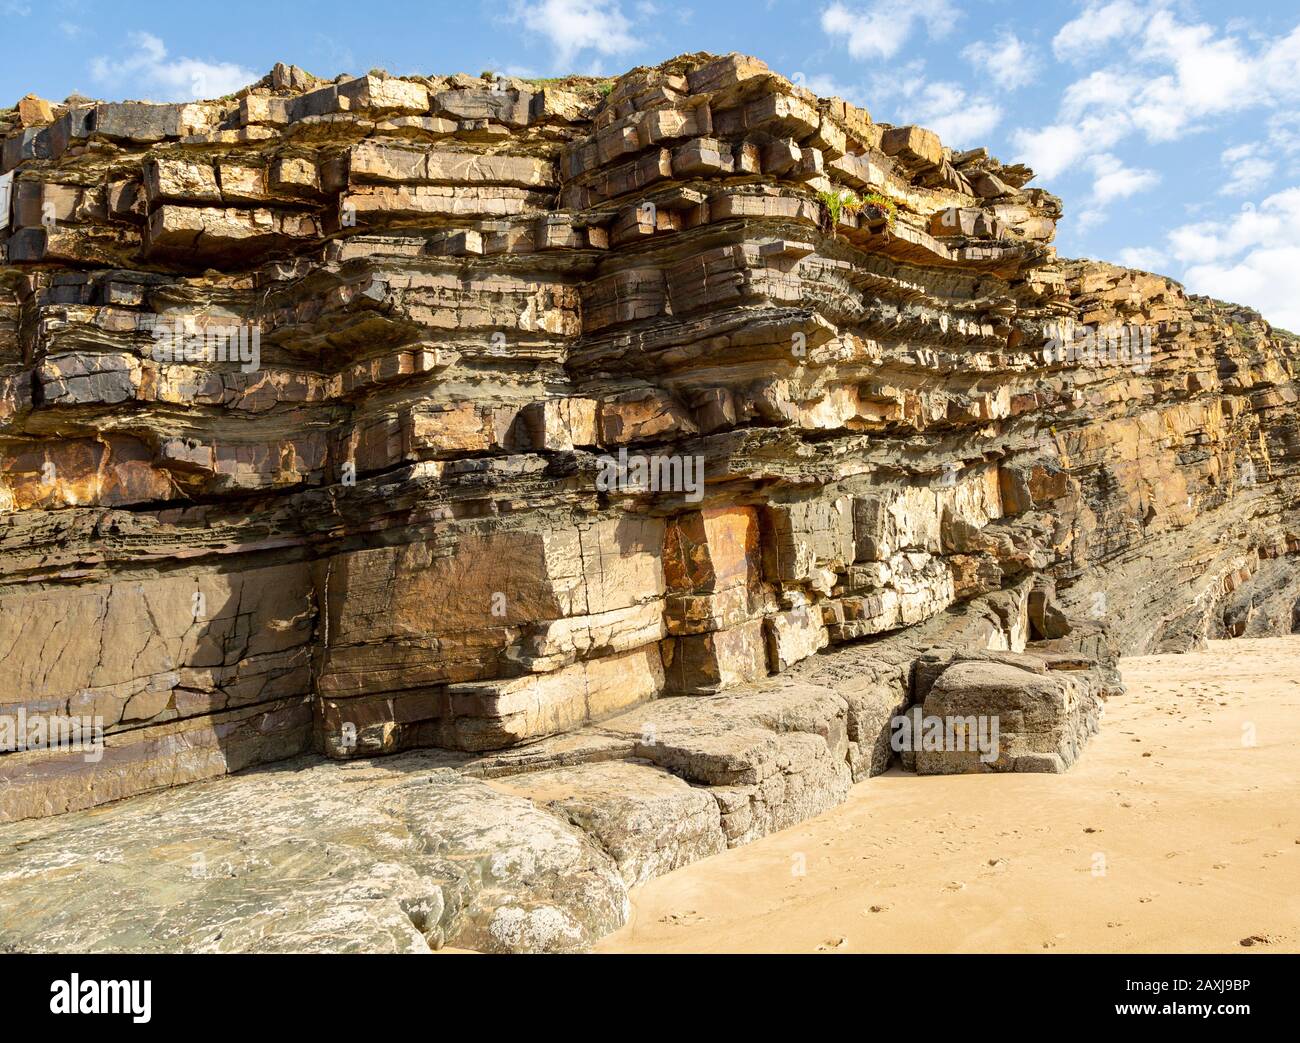 Geneigte Schichten, die Bettwäscheflugzeuge zeigen, wie die sedimentären Felsklippen an der Küste von Odeceixe, Algarve, Portugal und Südeuropa. Differentielle Erosion Stockfoto